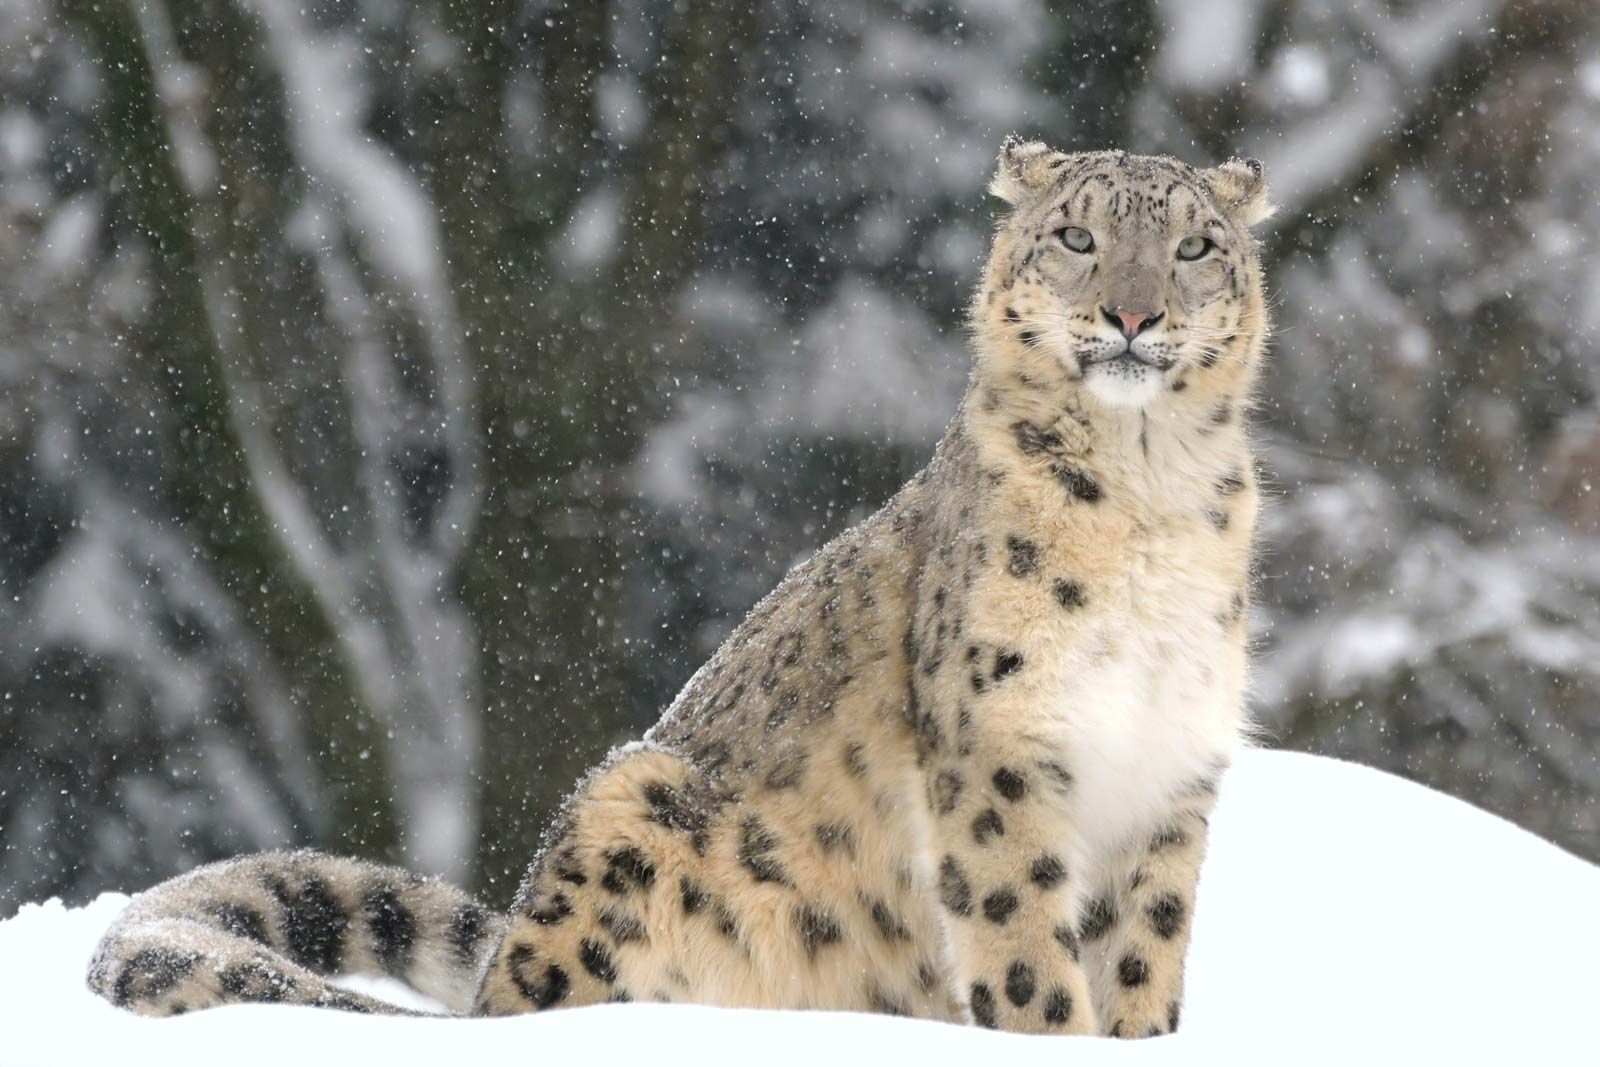 Snow leopard - Wikipedia